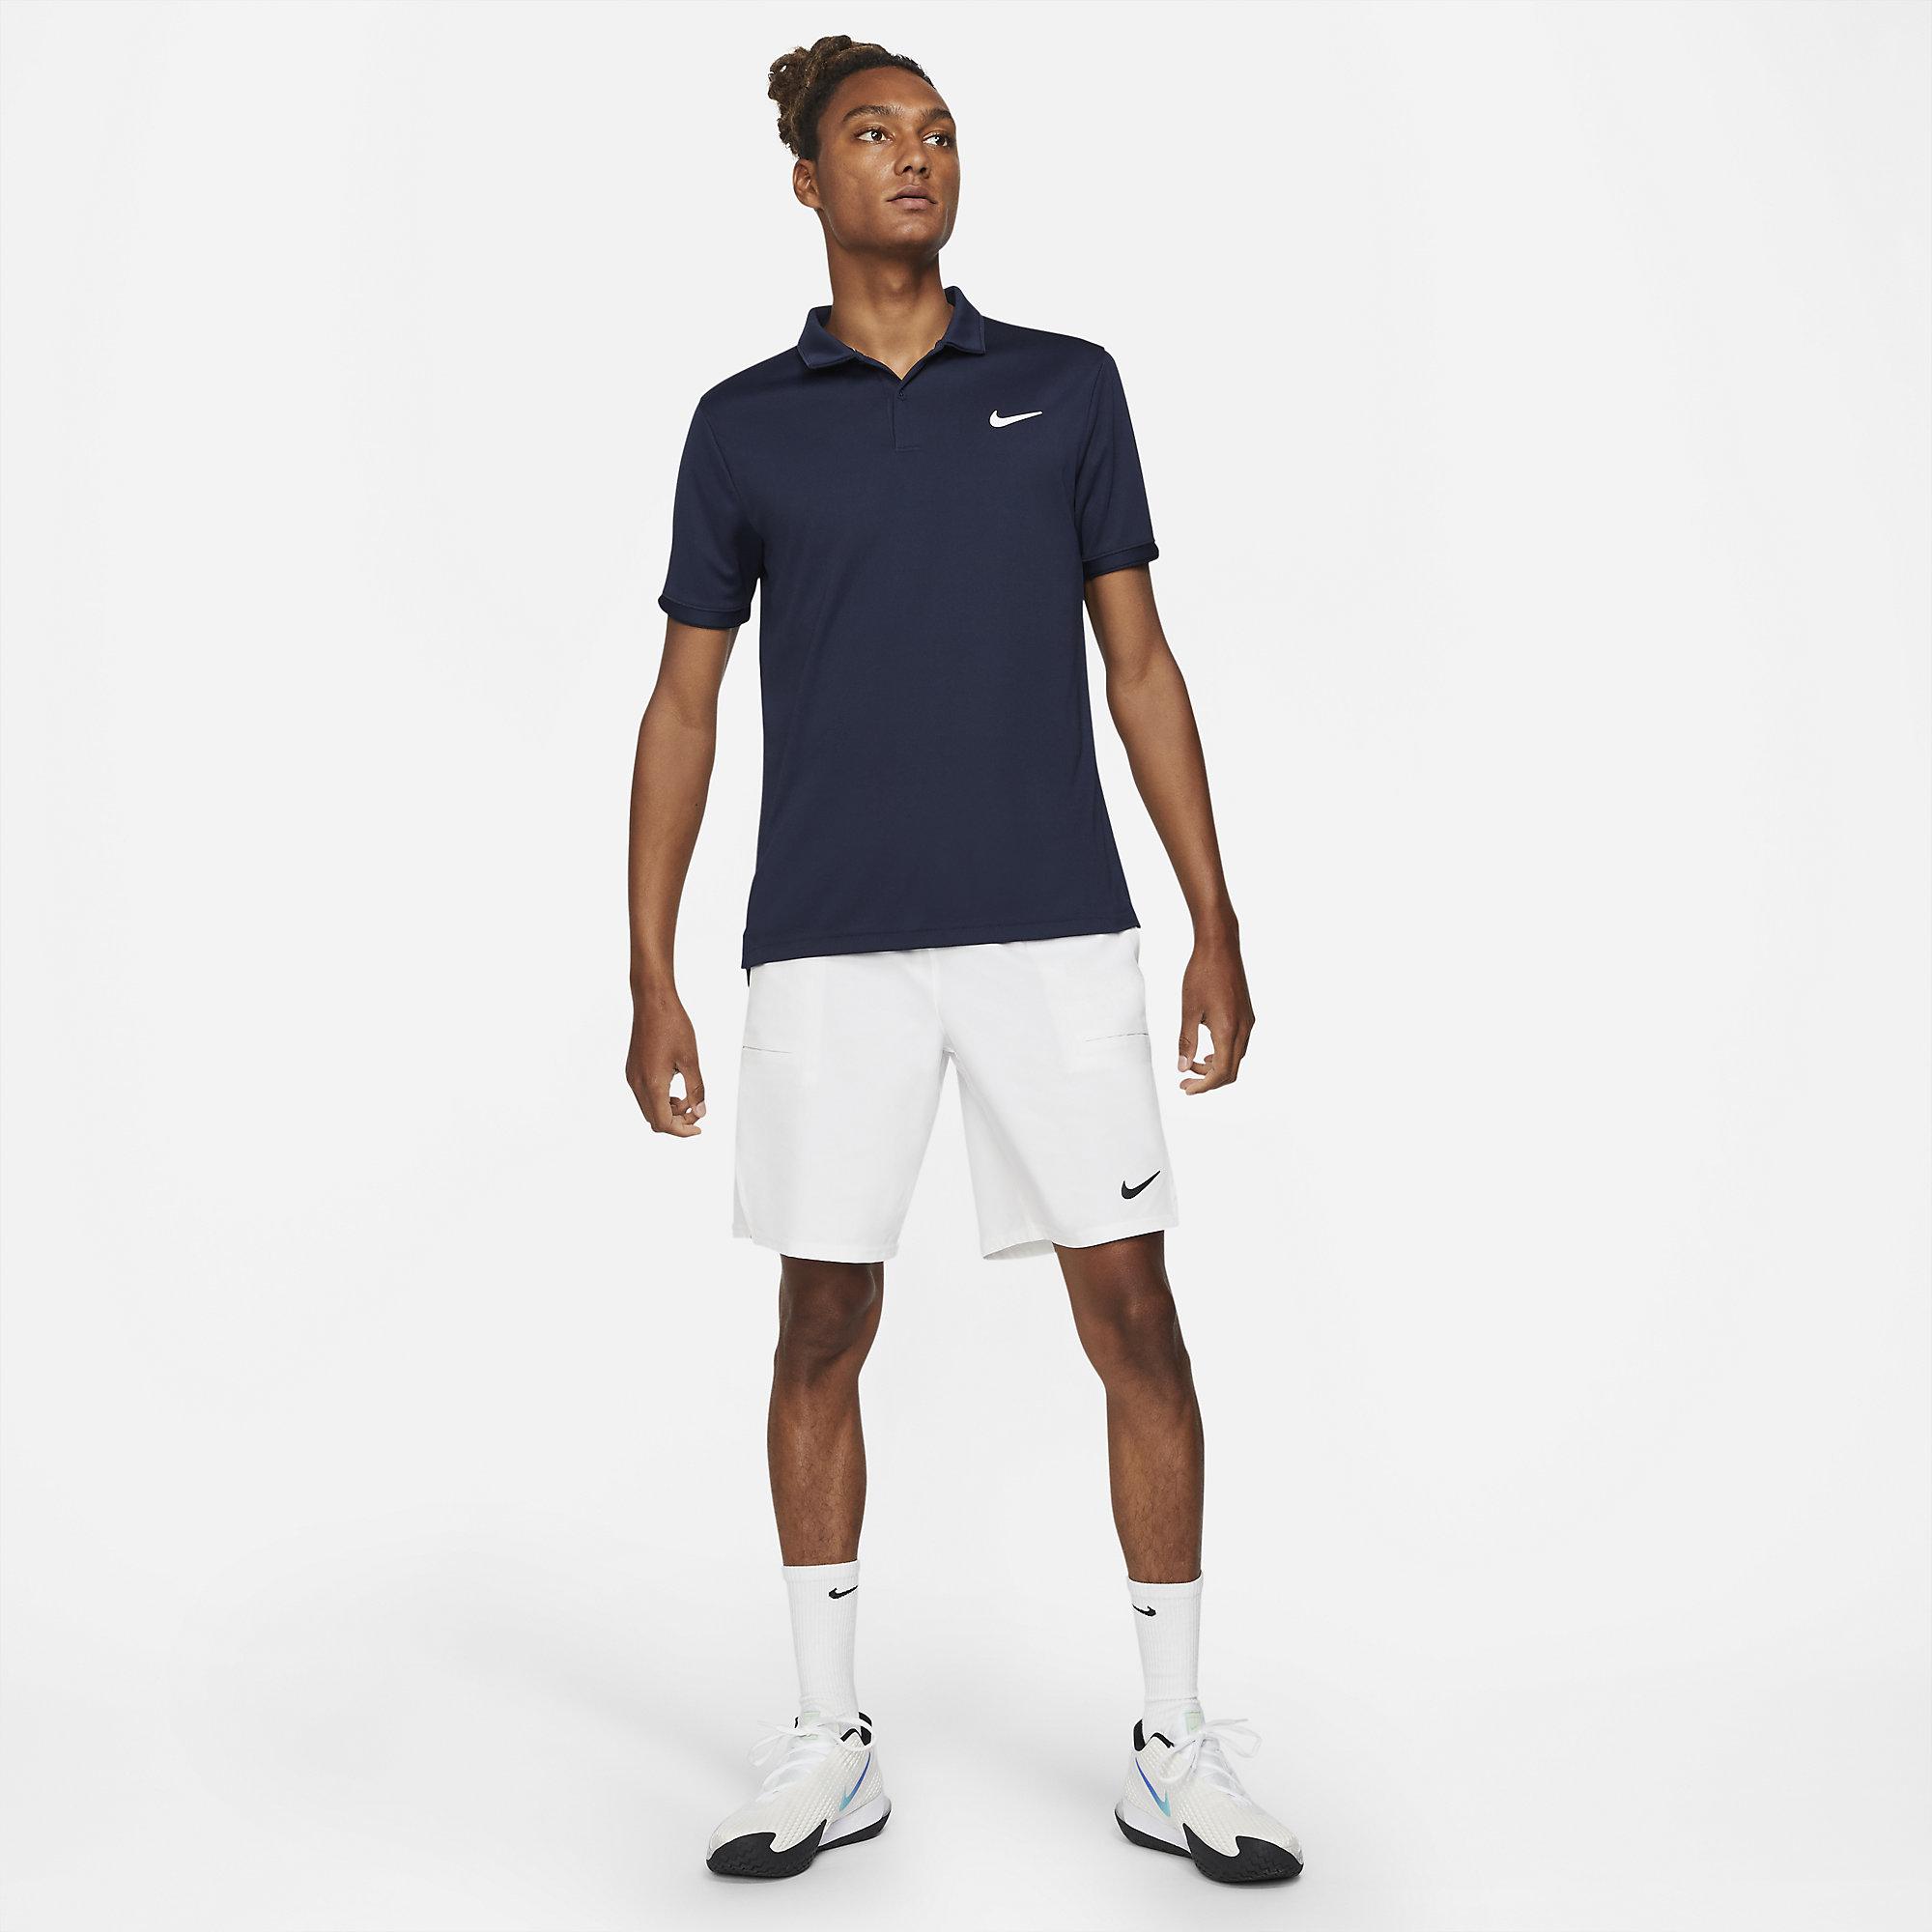 Nike Mens Victory Tennis Polo - Obsidian - Tennisnuts.com